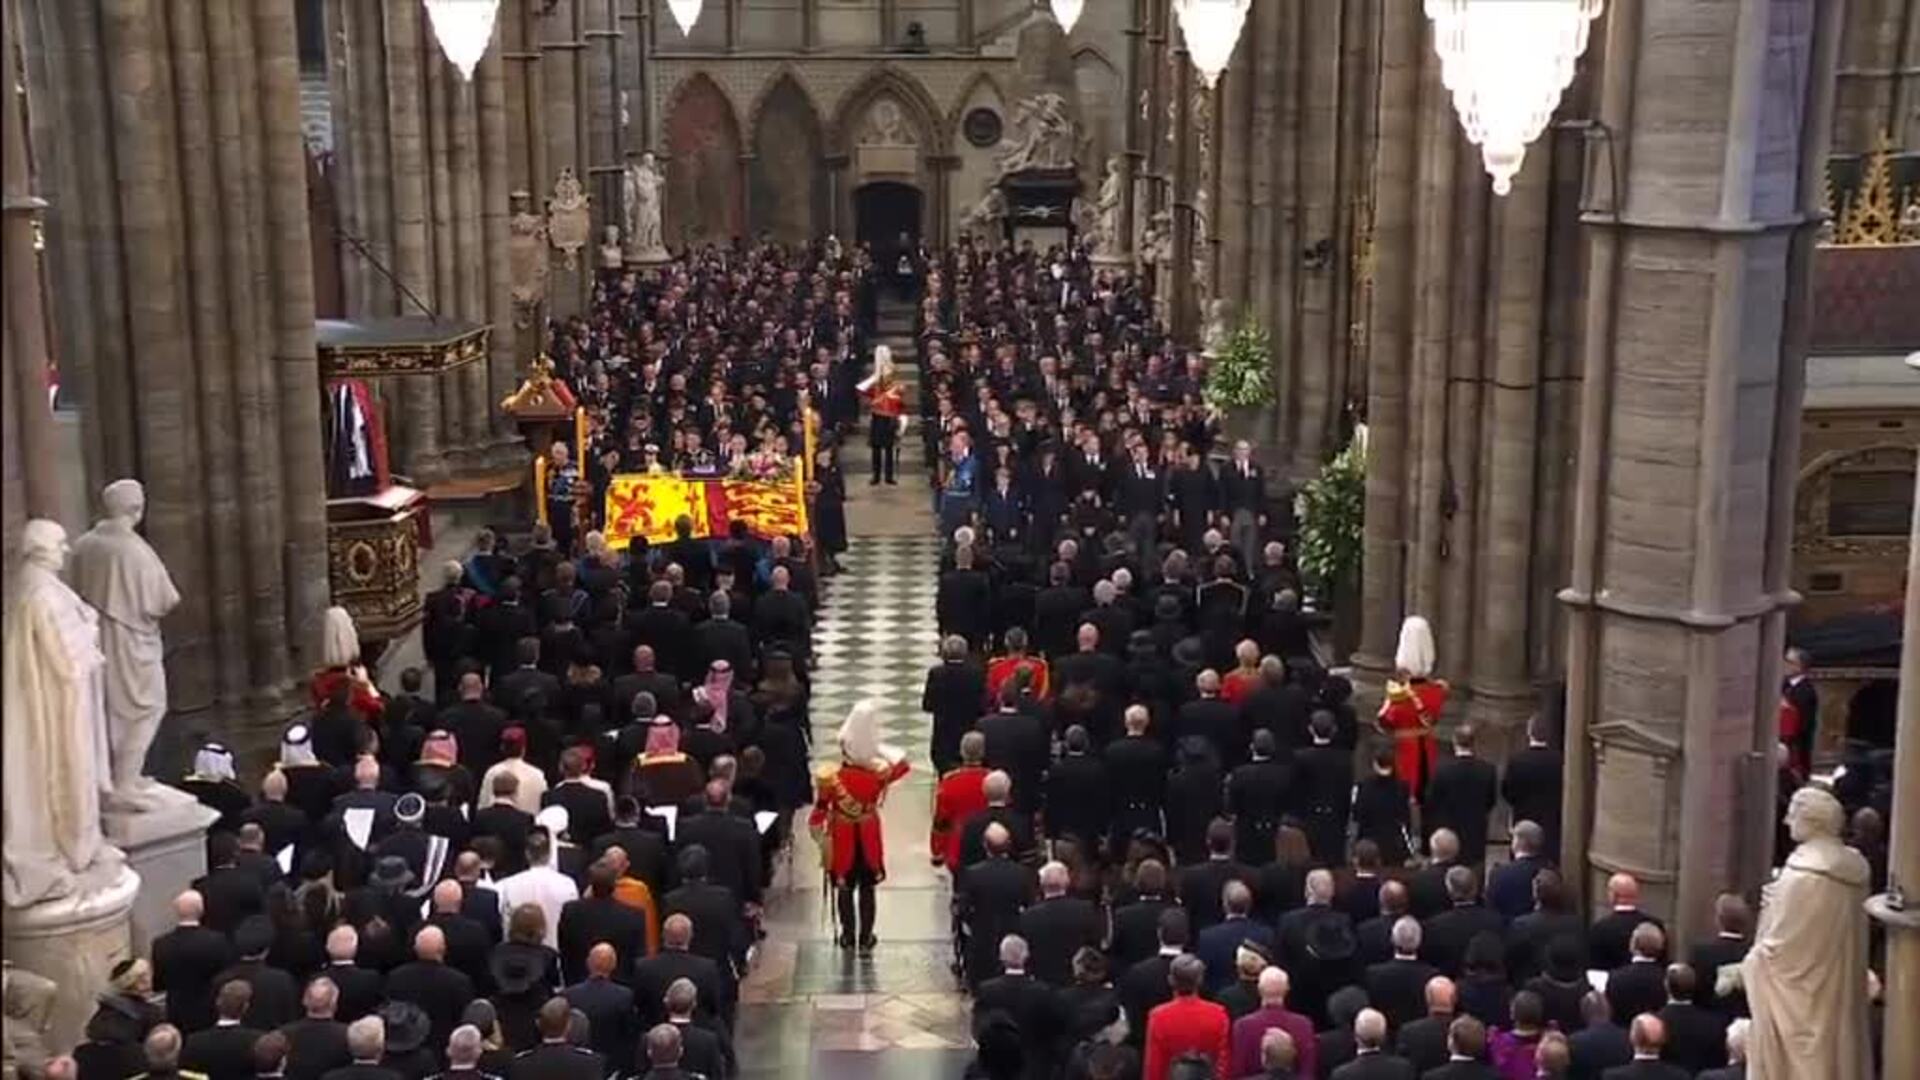 Se entona el 'God save the King' en la Abadía de Westminster